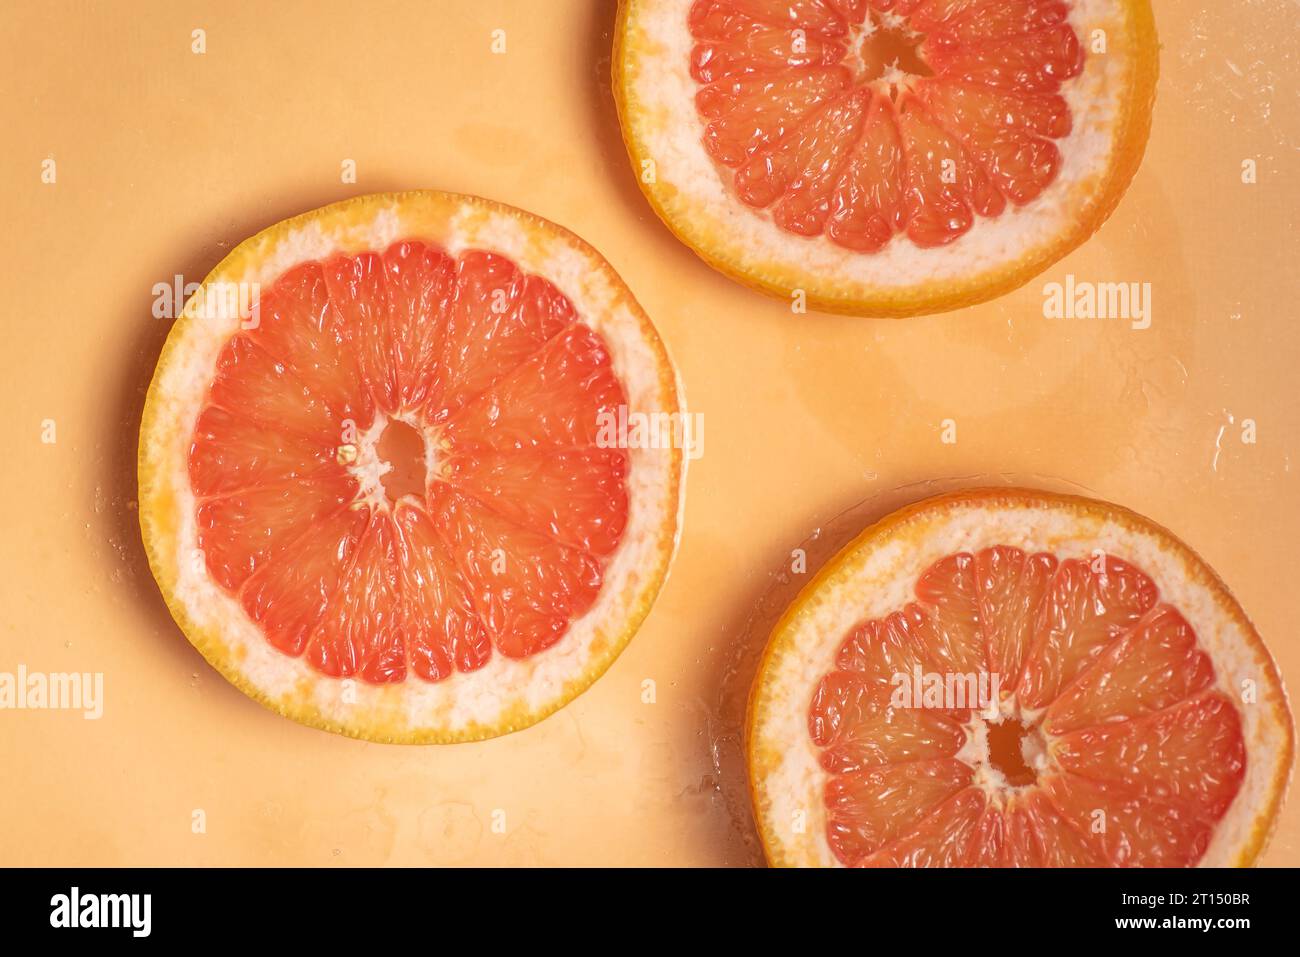 Tranches juteuses de pamplemousse sur fond orange Banque D'Images